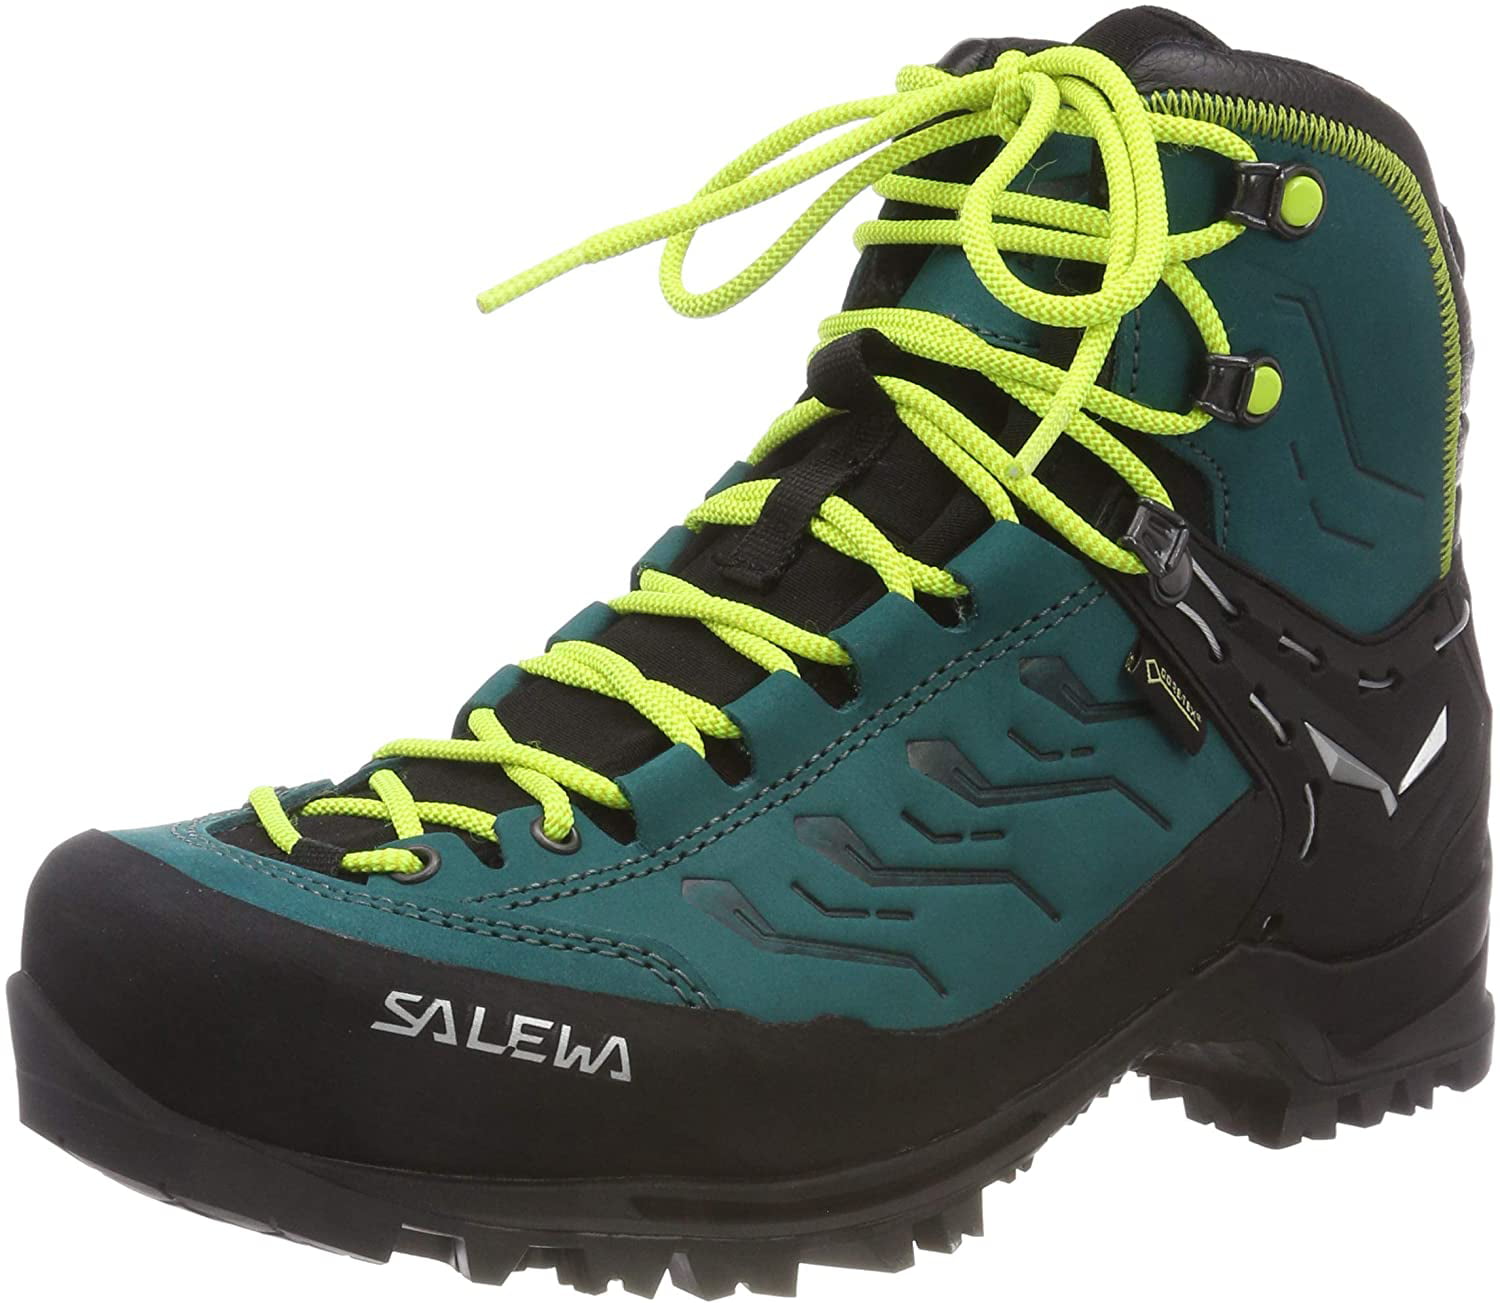 8.5 us Salewa Women's Trekking & Hiking Boots 